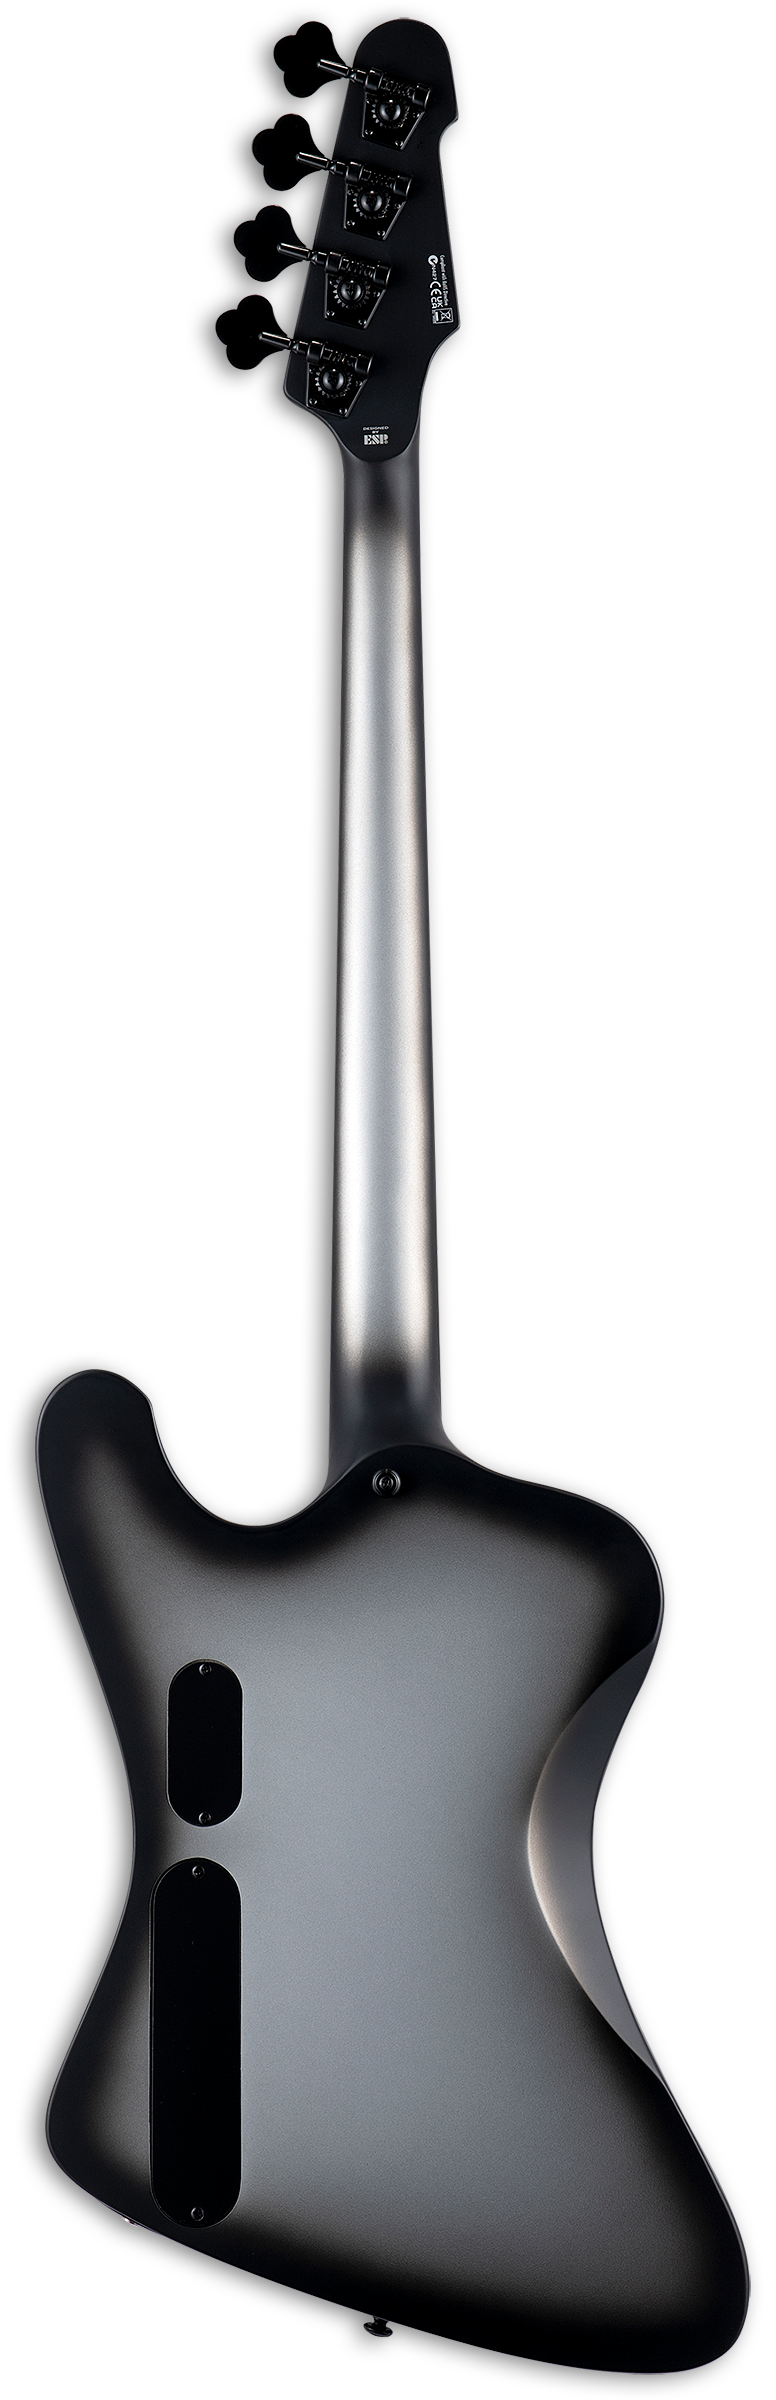 ESP LTD Phoenix-1004 Guitare basse électrique (Silver Sunburst Satin)